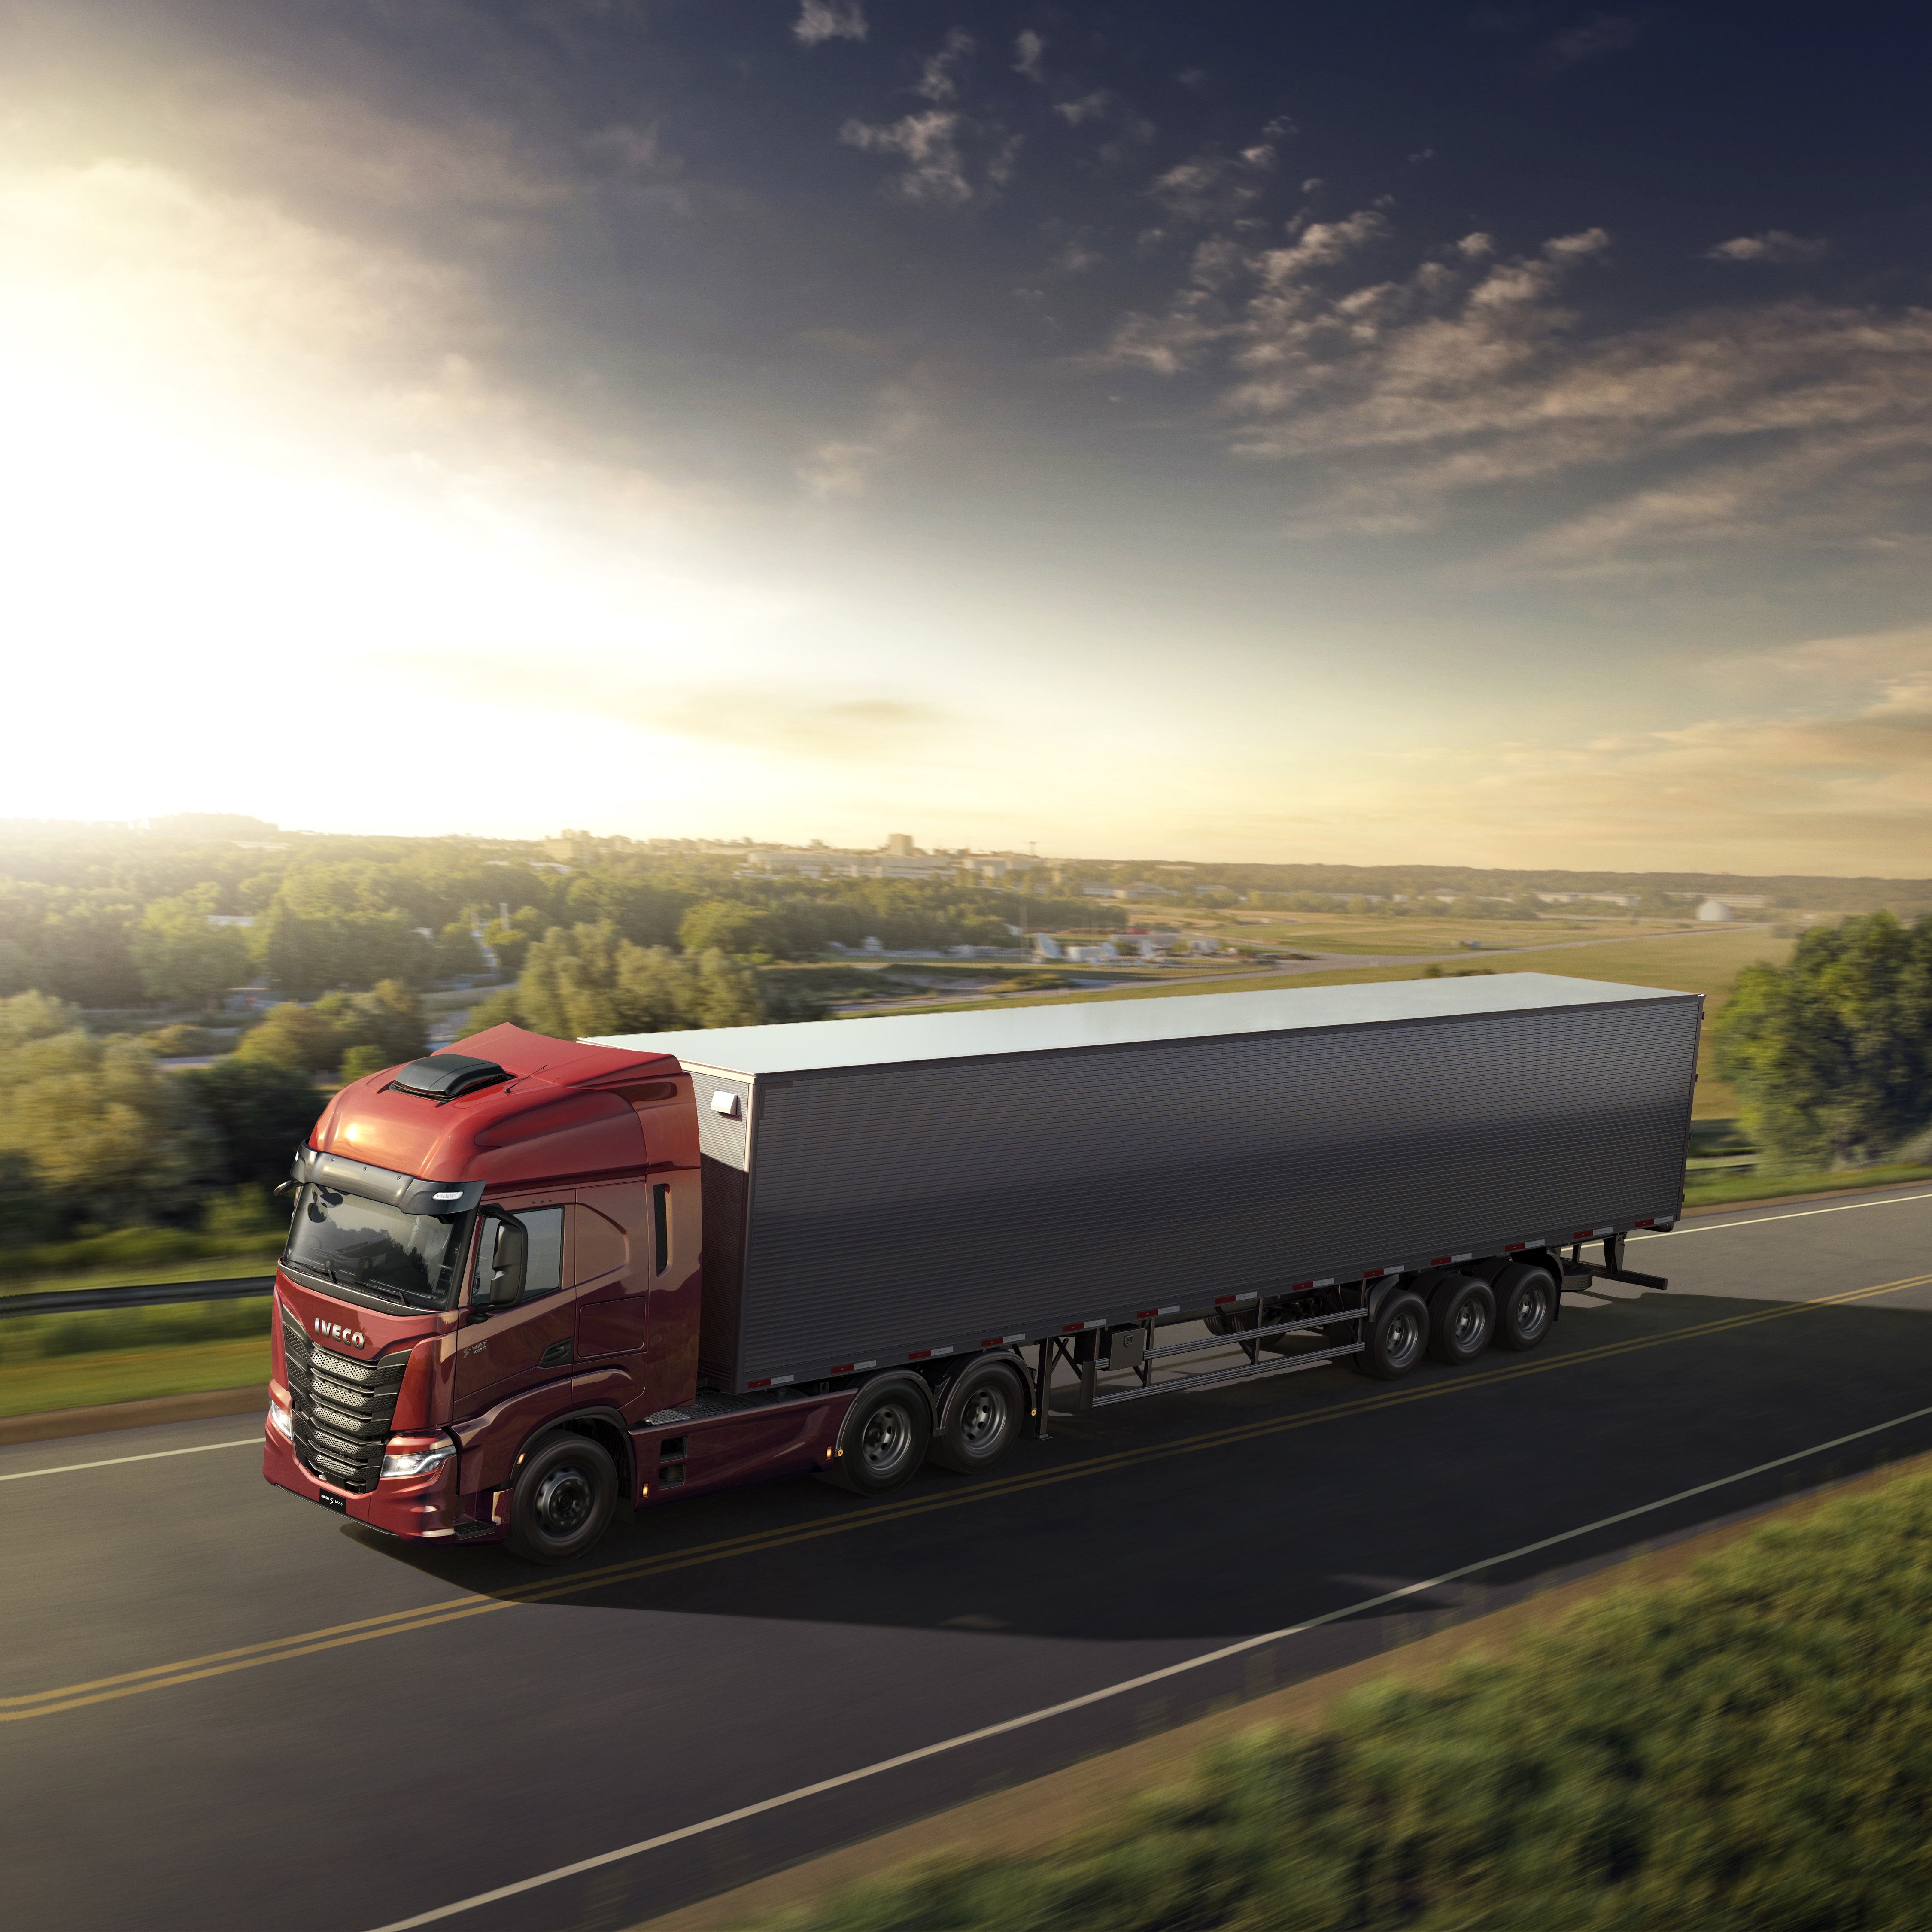 40 unidades do caminhão Iveco S-Way são vendidas para Localiza